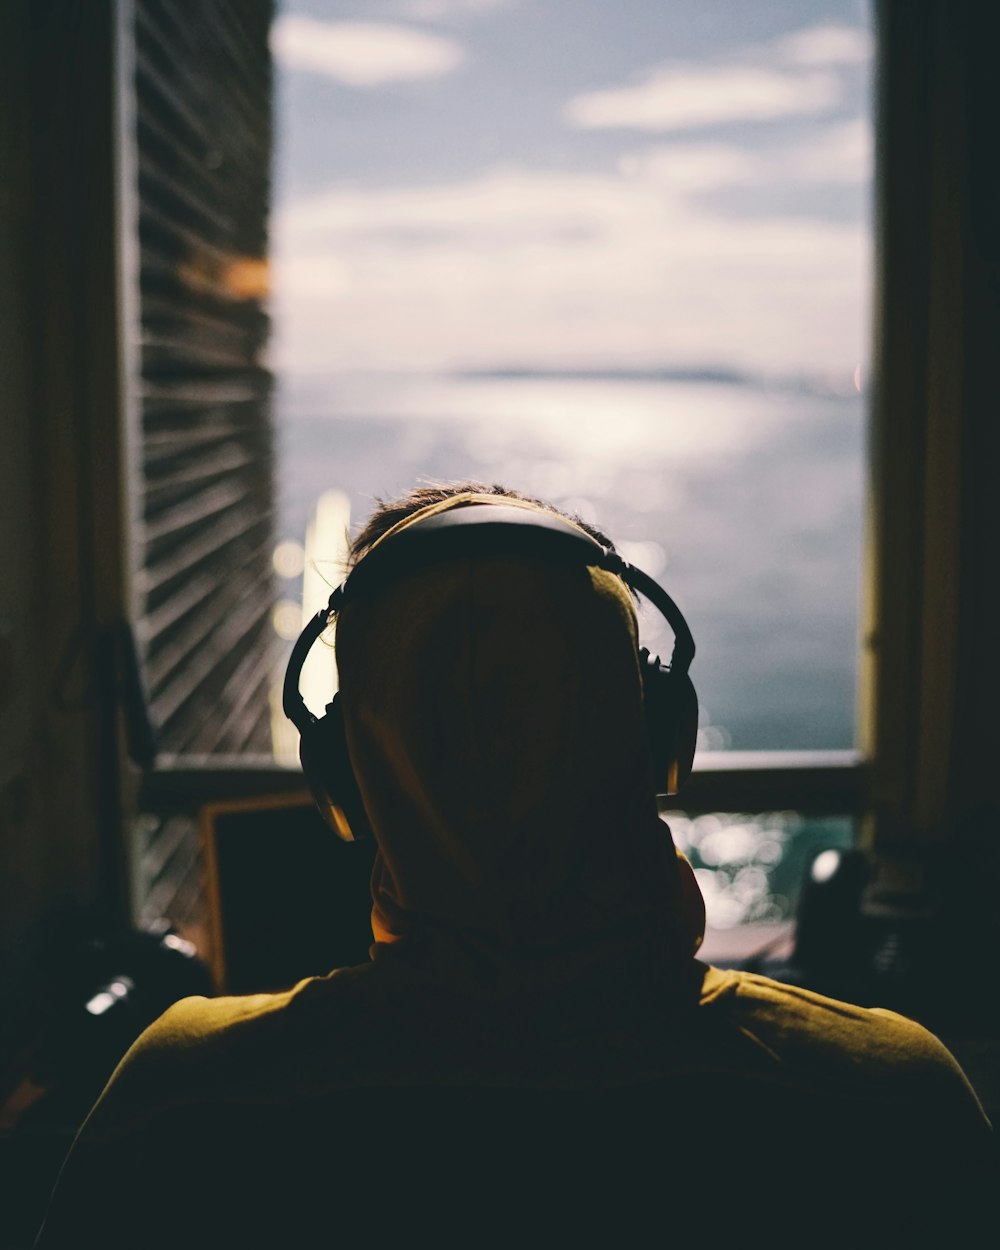 photographie d'une personne portant des écouteurs faisant face à un plan d'eau à travers la fenêtre d'une pièce sombre